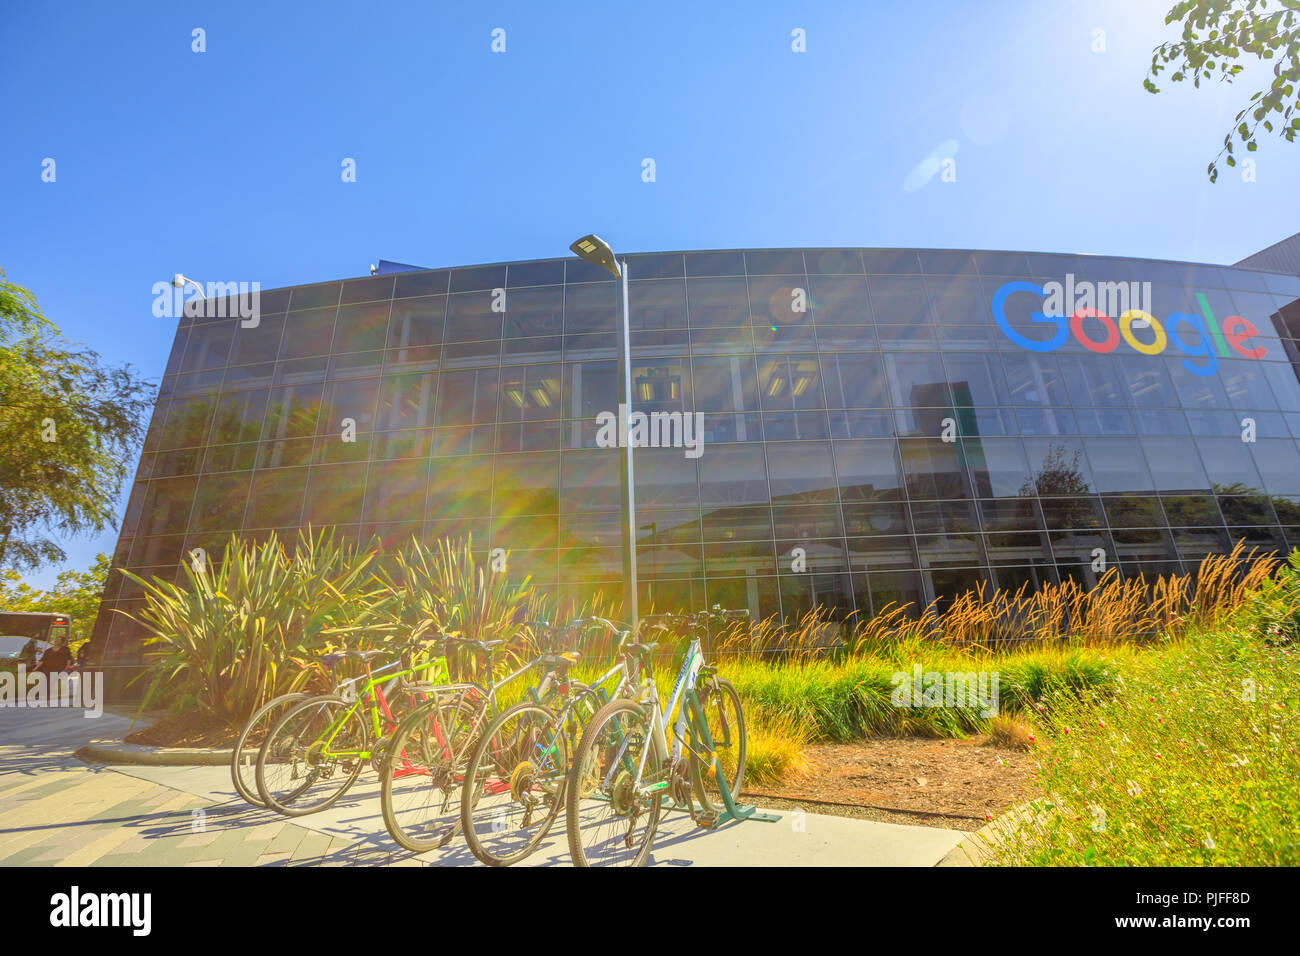 Mountain View, Californie, USA - 13 août 2018 : de l'extérieur d'un bâtiment du siège de Google. La technologie de Google société leader dans les services internet, la publicité en ligne, moteur de recherche, l'informatique en nuage. Banque D'Images